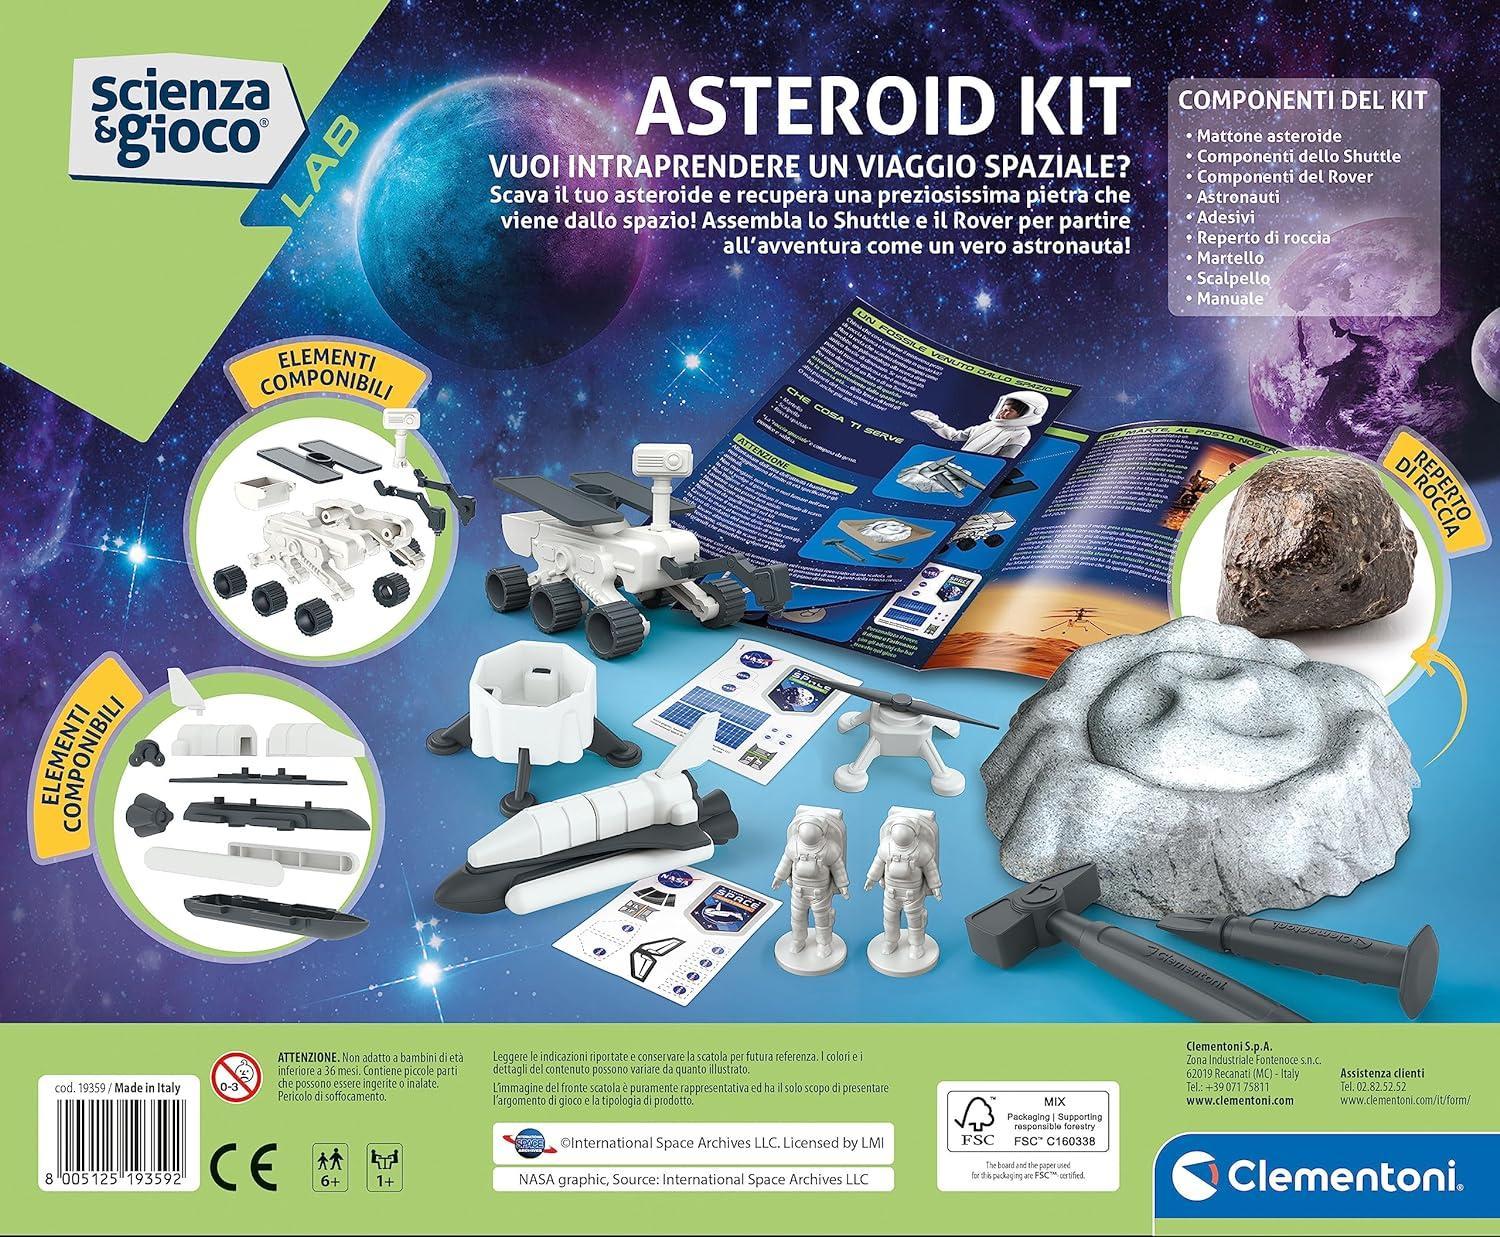 clementoni asteroid kit scienza e gioco